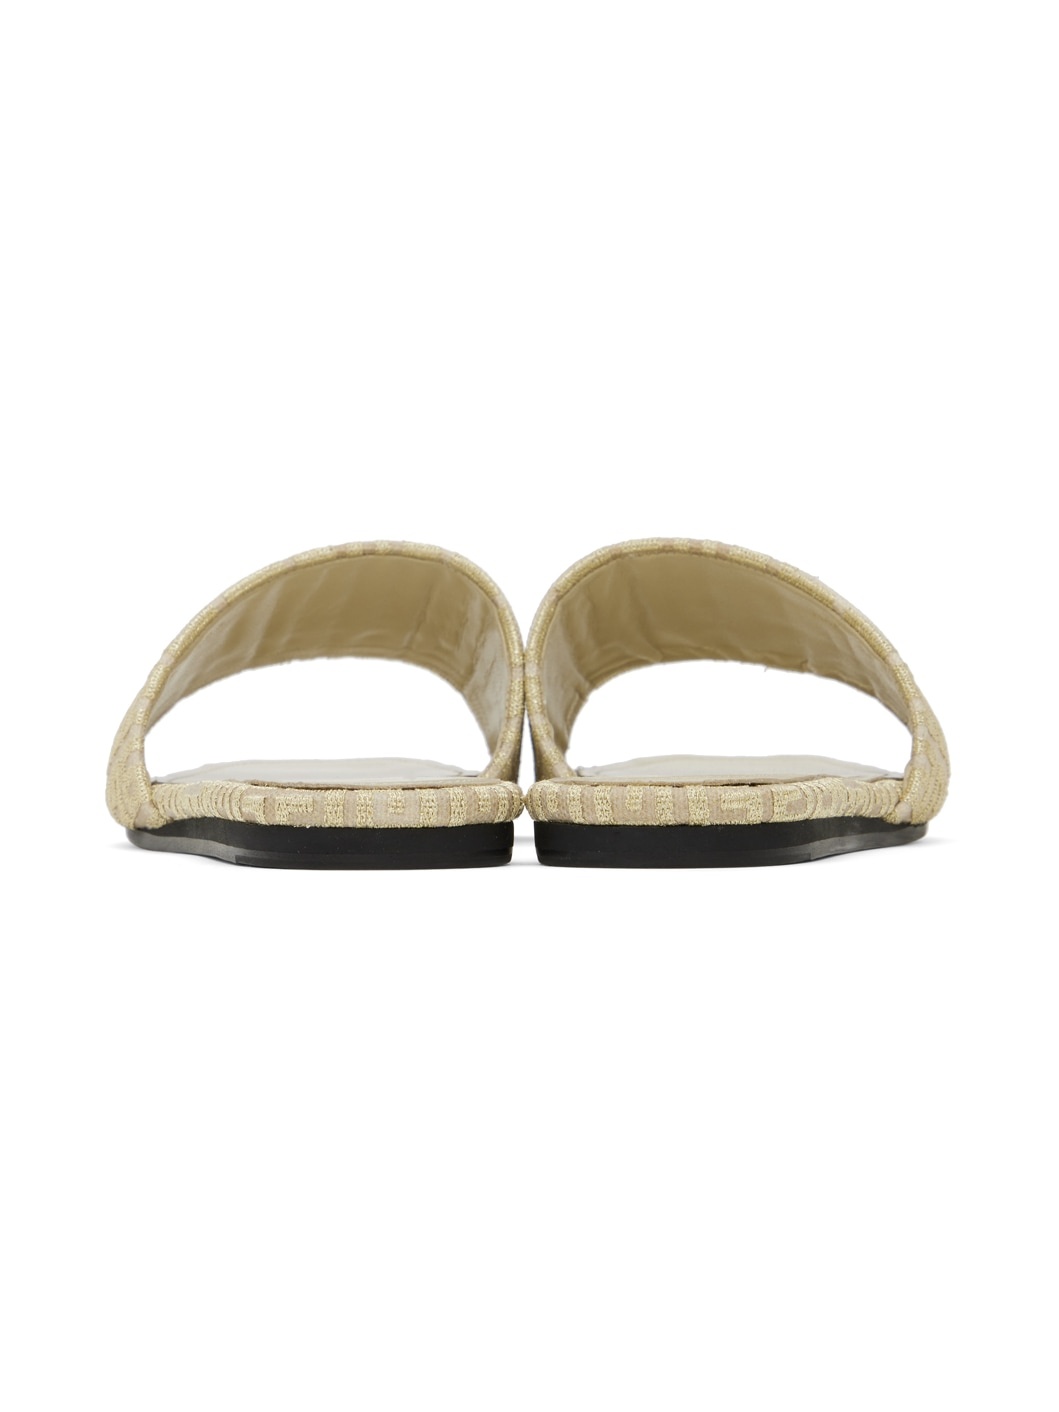 Beige & Gold 4G Sandals - 2